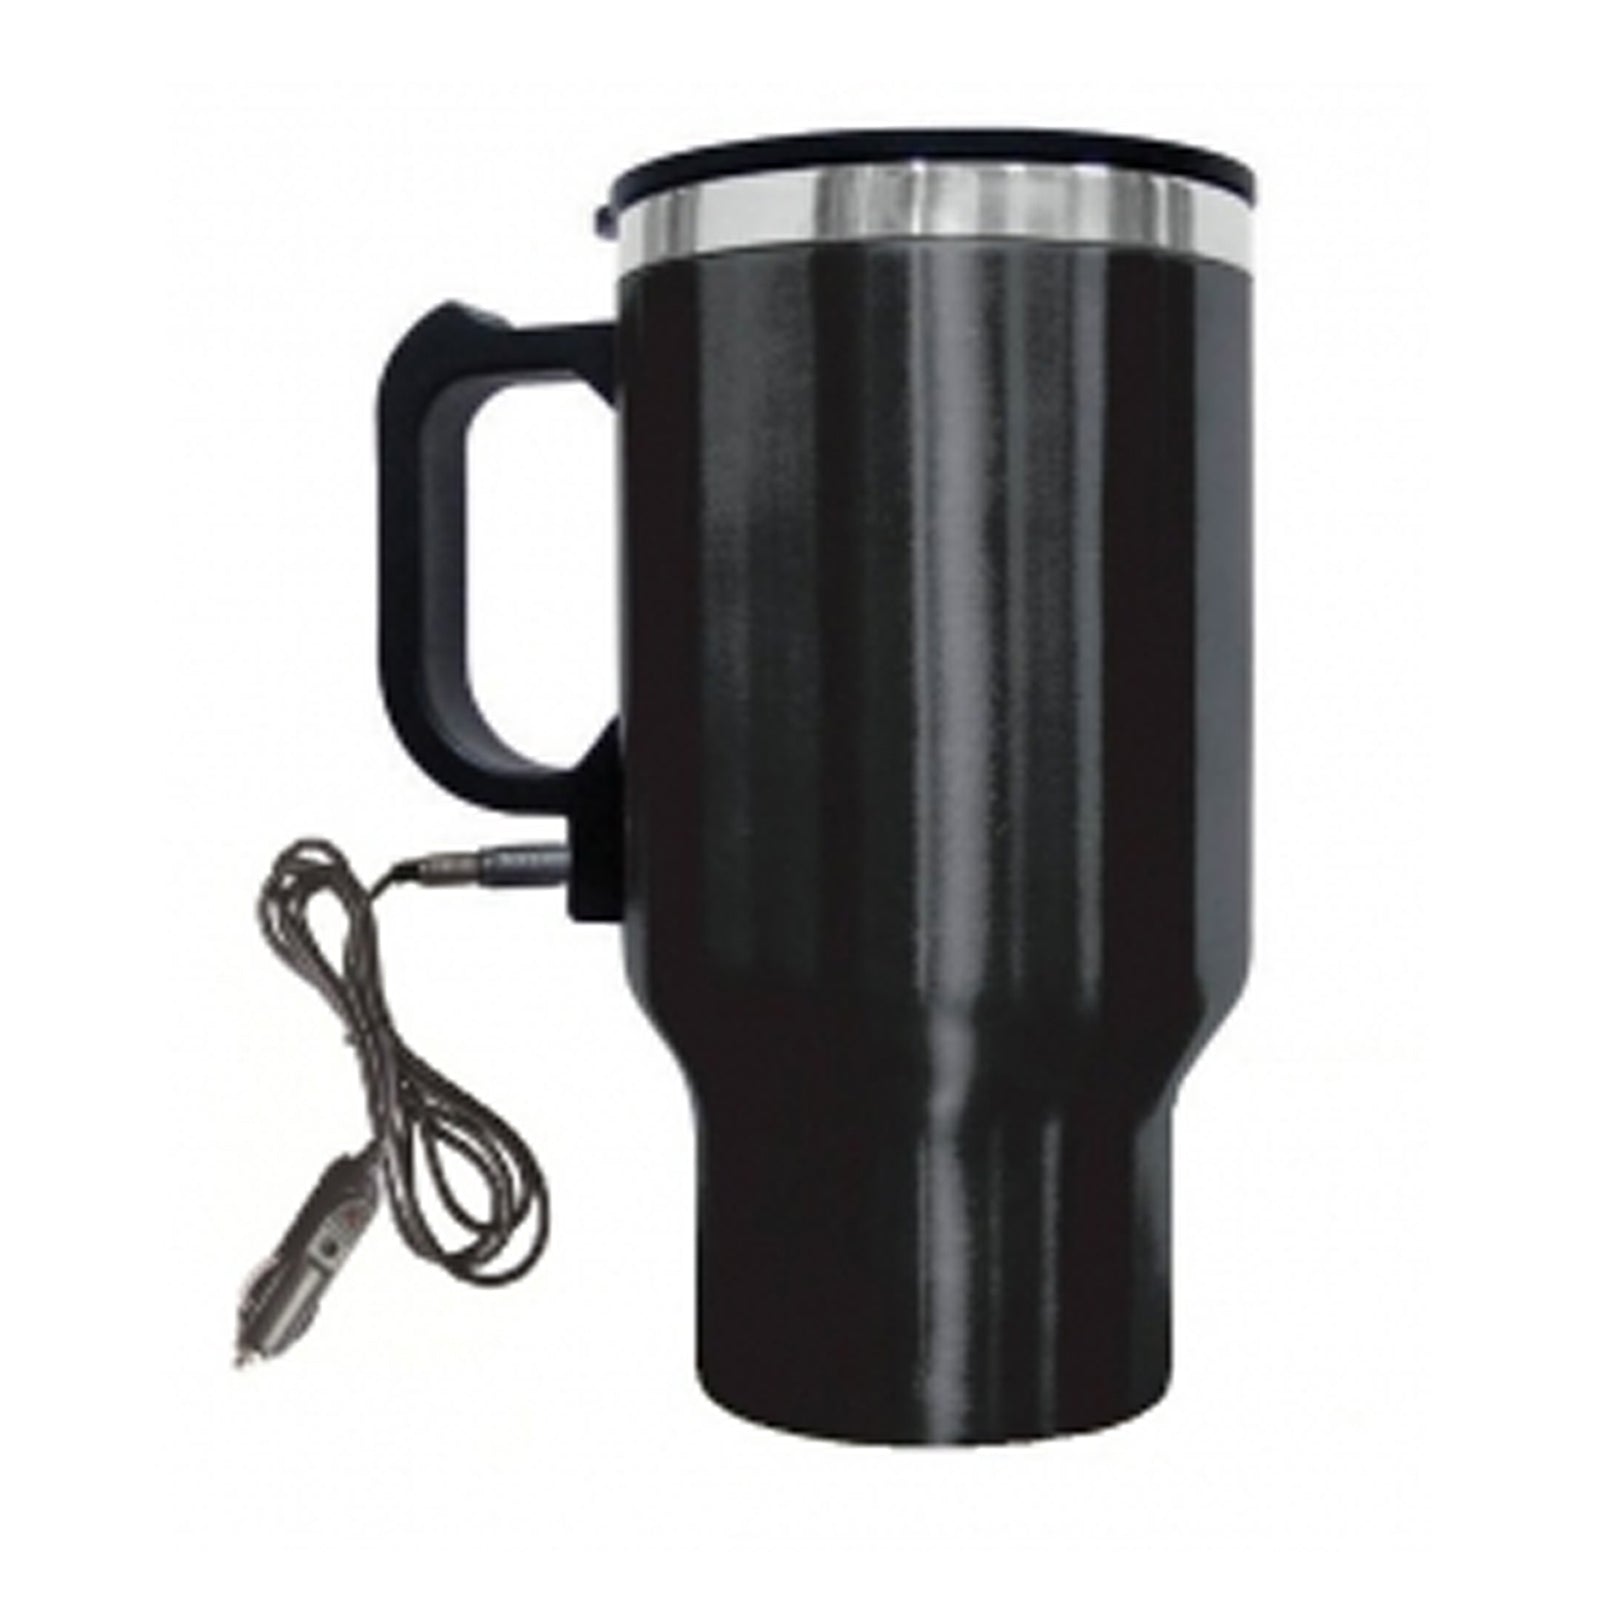 Brentwood Electric Coffee Mug W/ Wire Car Plug